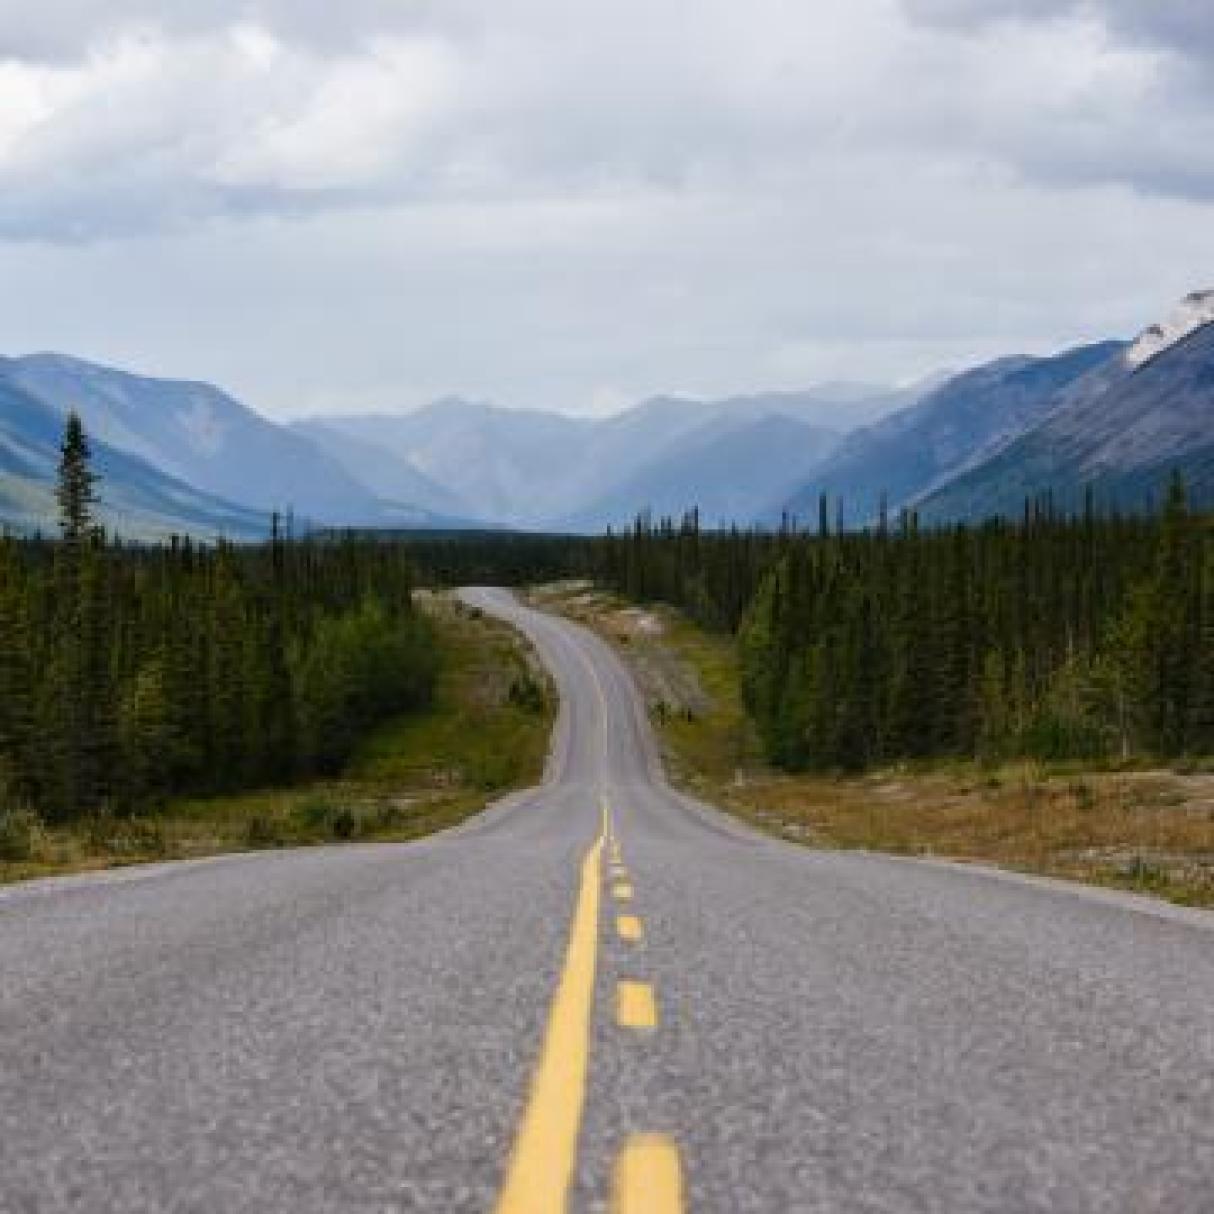 The road toward muncho lake provincial park in British Columbia